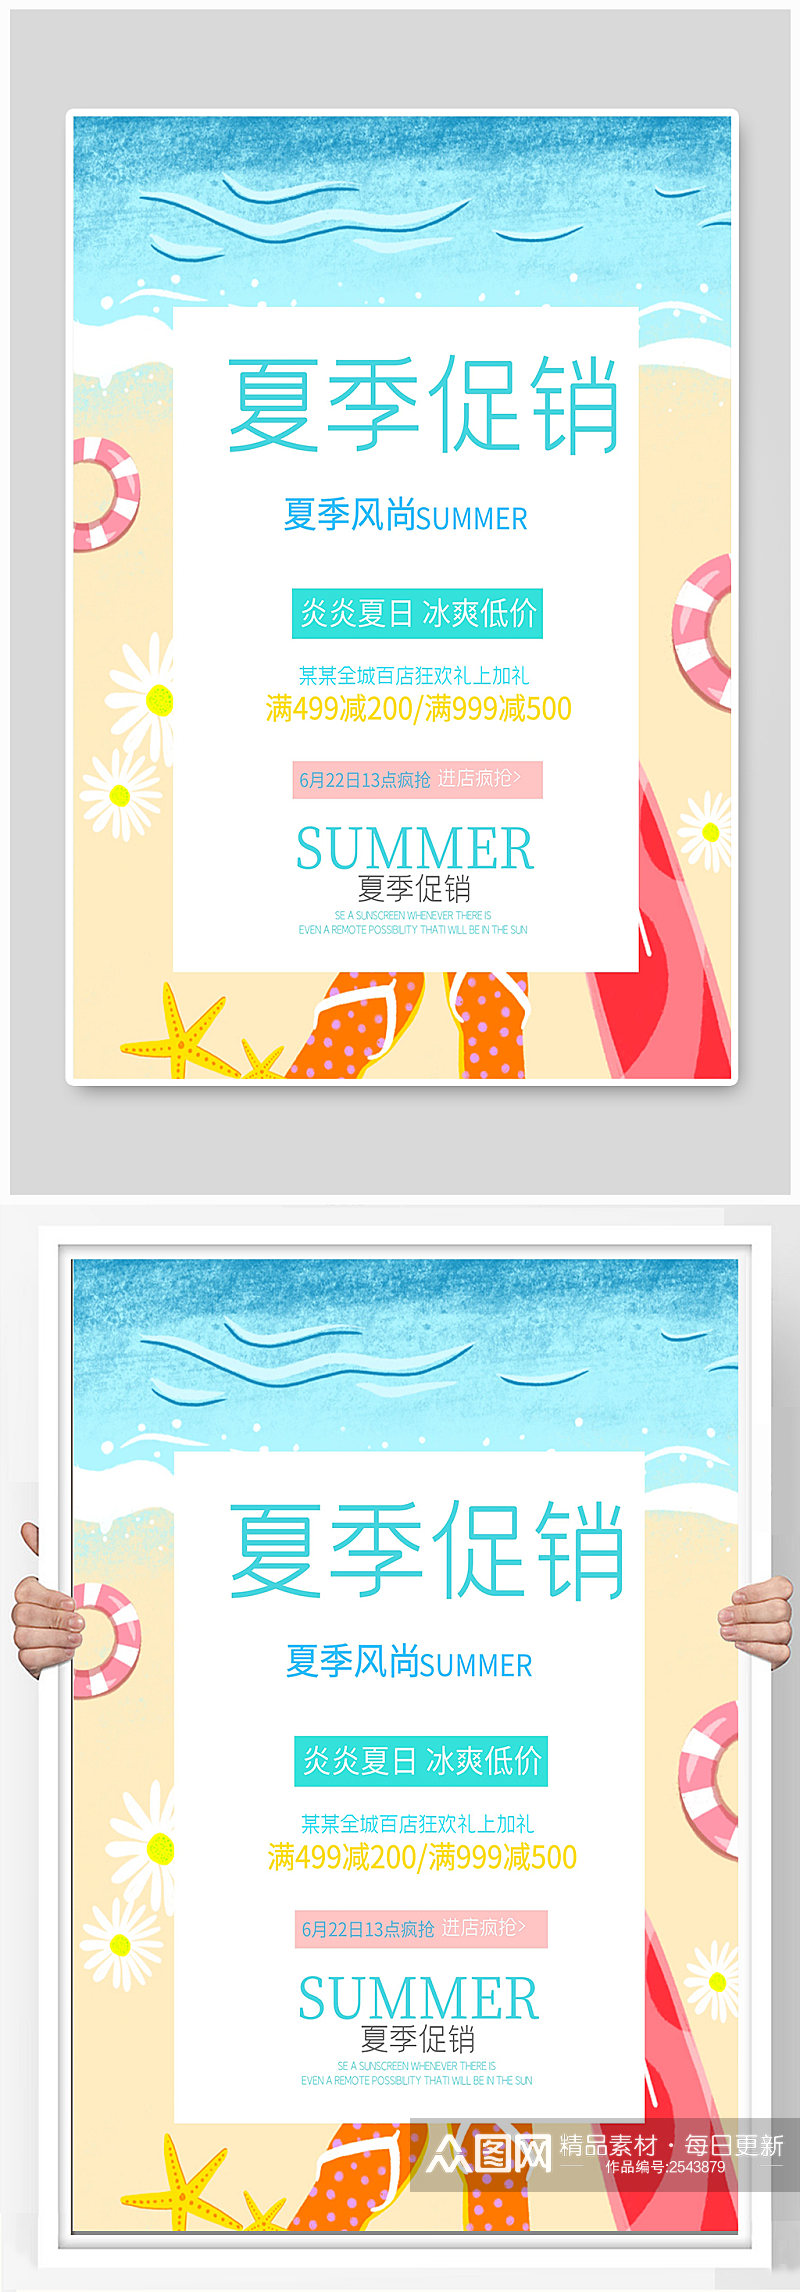 夏季促销宣传海报设计素材